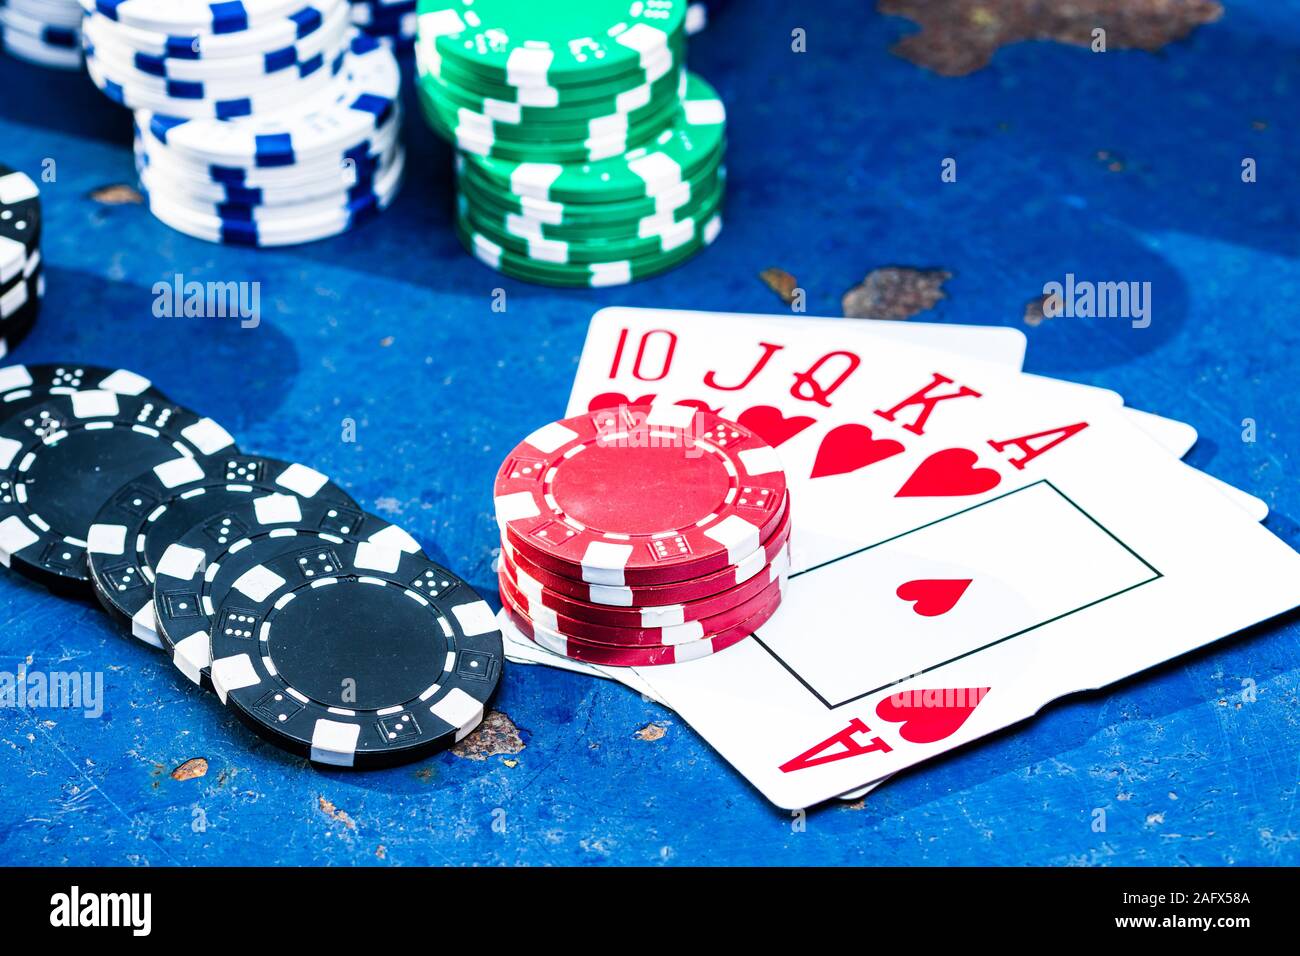 Jeu de poker gratuit. Concept de casino pour les entreprises, risque,  chance, bonne chance ou le jeu. Pile de jetons de poker et jeux de cartes,  Close up, isolé Photo Stock -